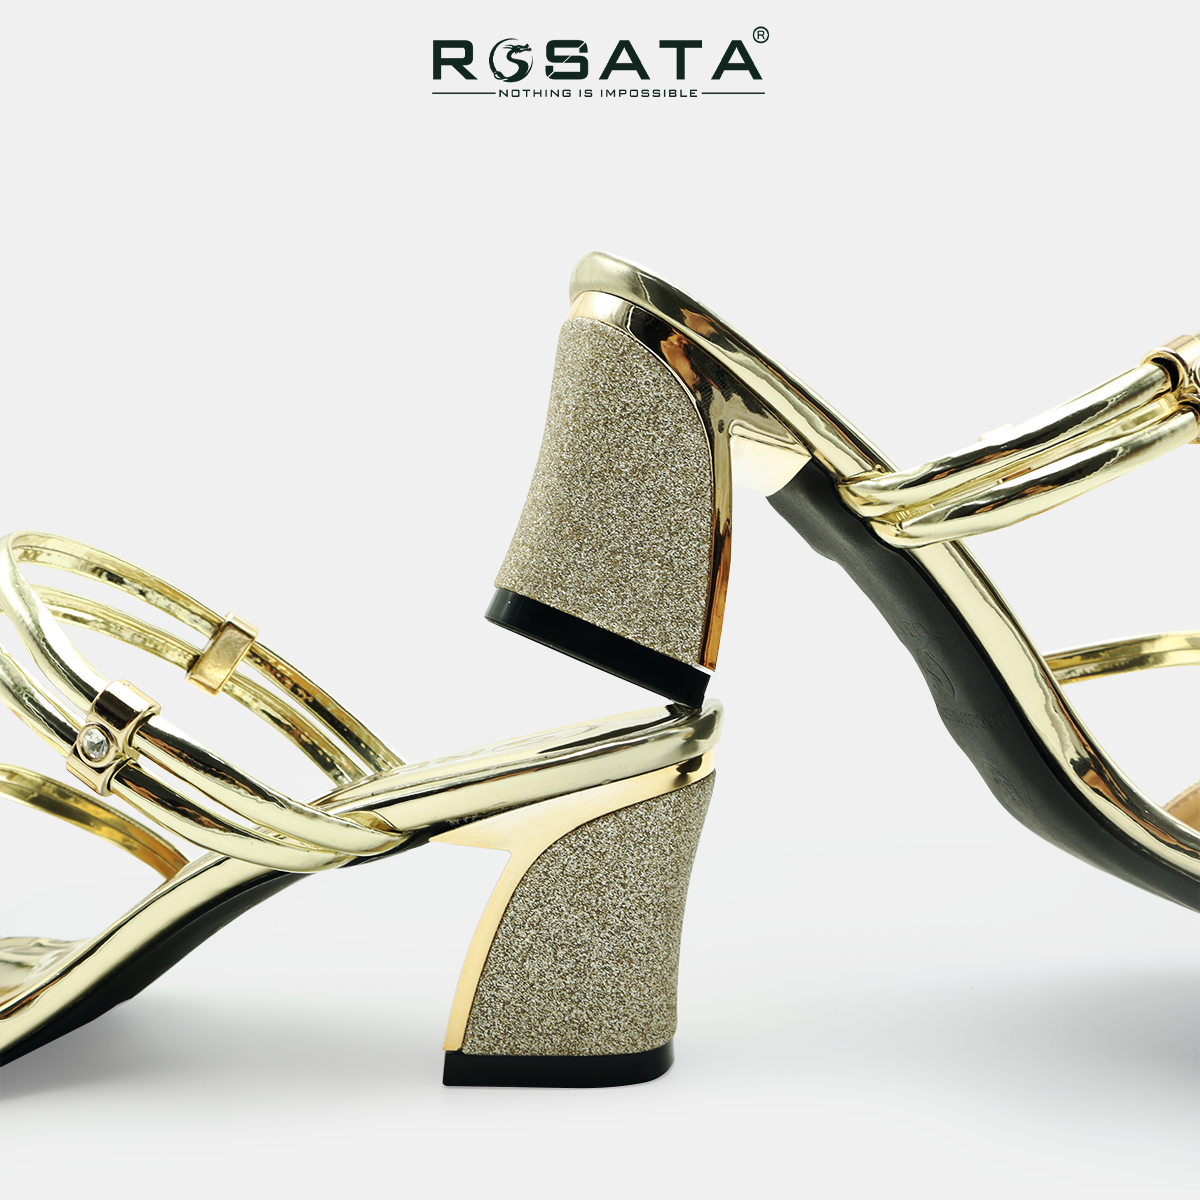 Sandal, dép nữ phối kim tuyến gót vuông ROSATA RO539 cao 5p - bạc, đồng - HÀNG VIỆT NAM - BKSTORE